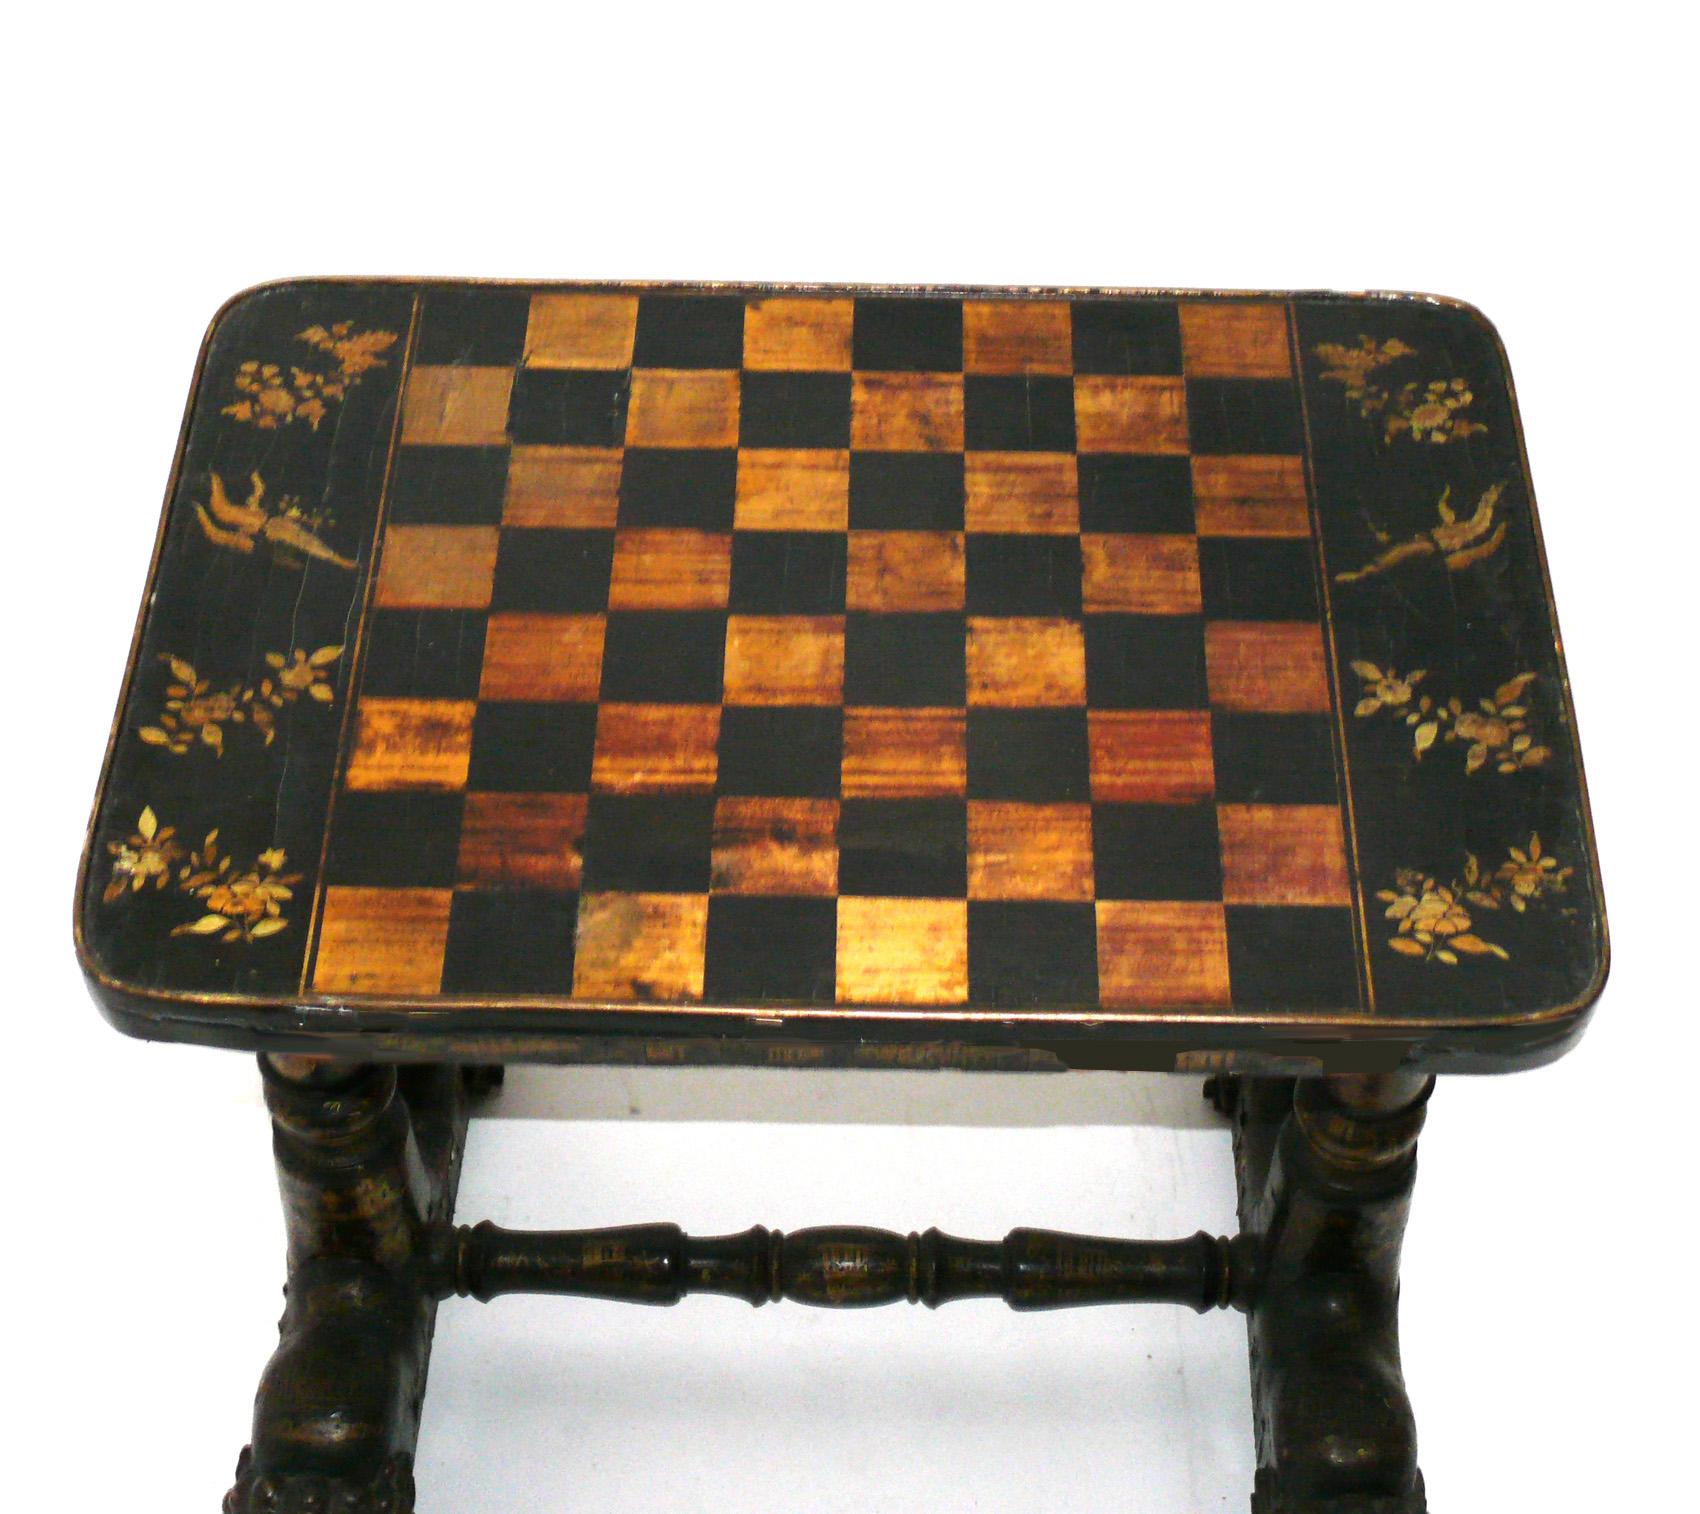 Chinoiserie Lackierter und vergoldeter Spieltisch, wahrscheinlich chinesisch, mindestens um 1940, möglicherweise viel früher. Behält die warme Originalpatina. Er hat eine vielseitige Größe und kann als Spieltisch, Lampentisch, Beistelltisch oder